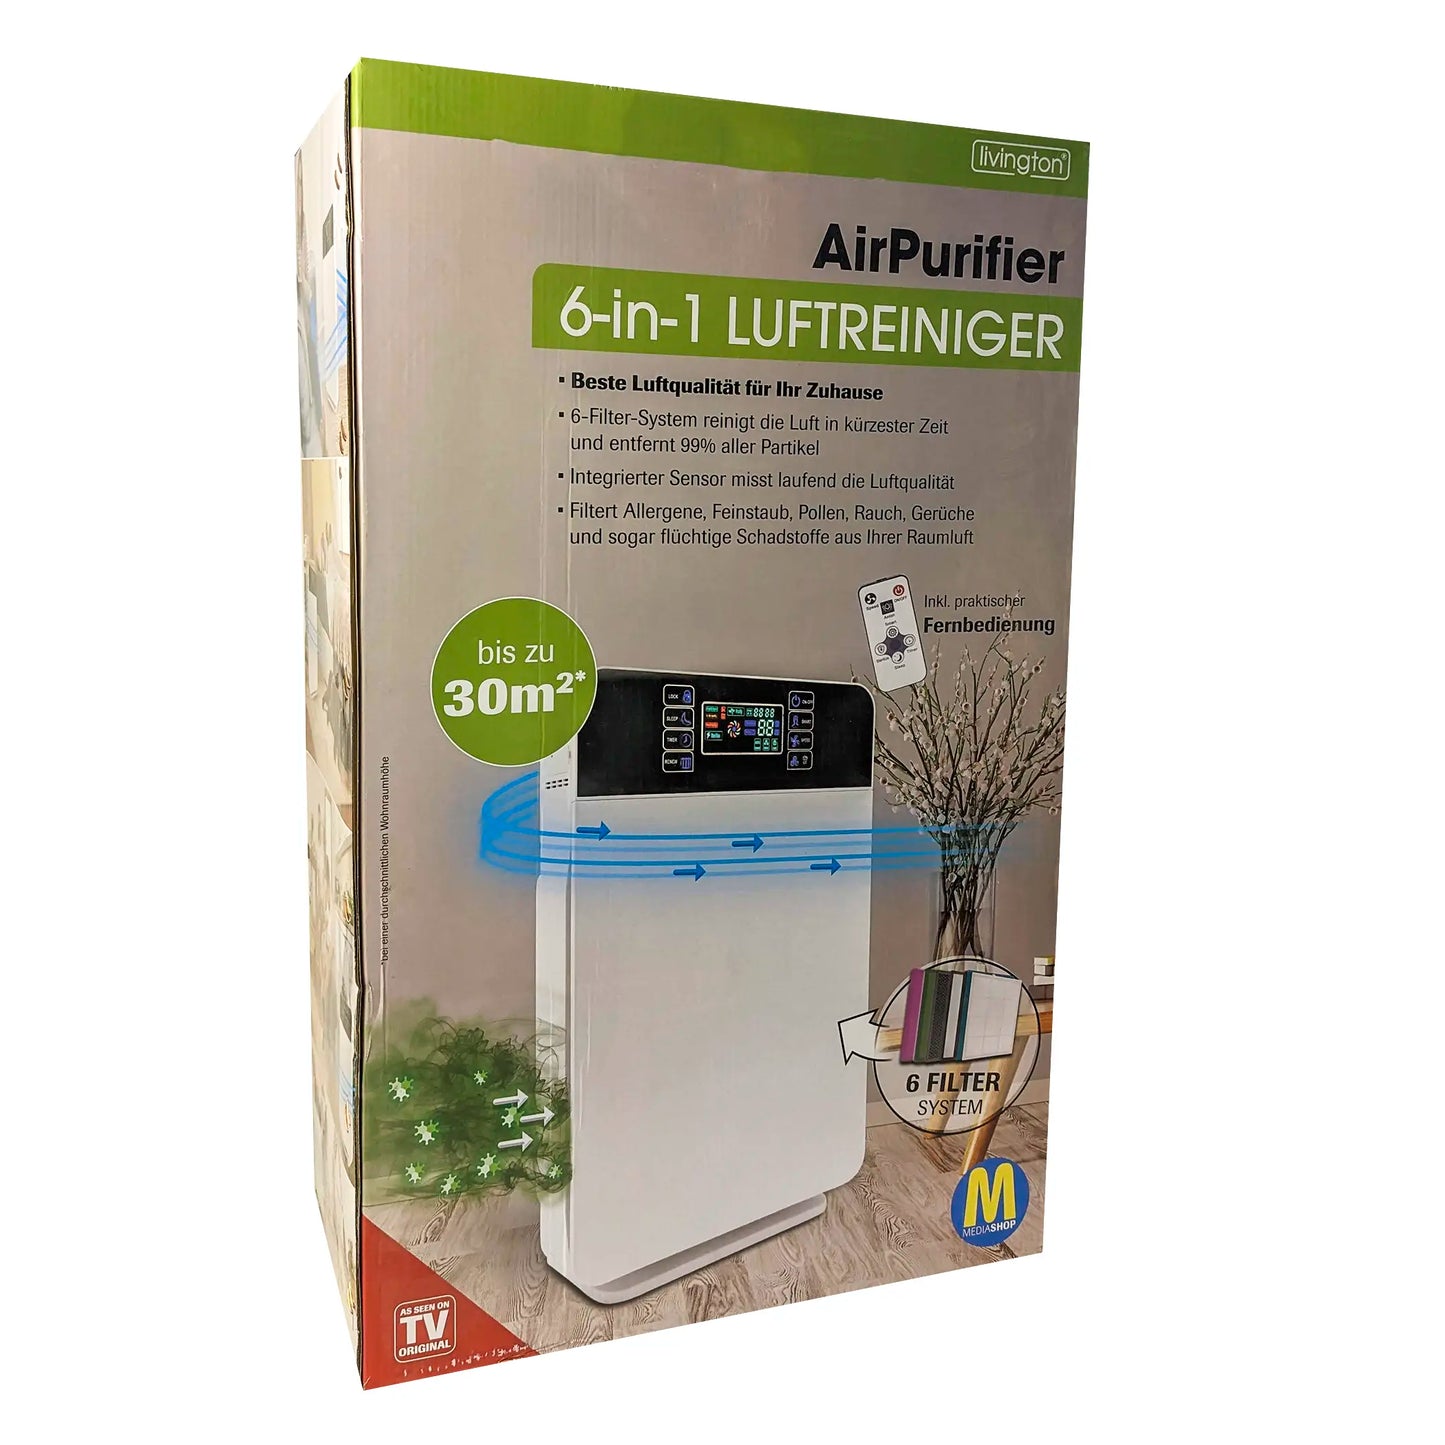 Livington AirPurifier 6-in-1 Luftreiniger für bis zu 30m²